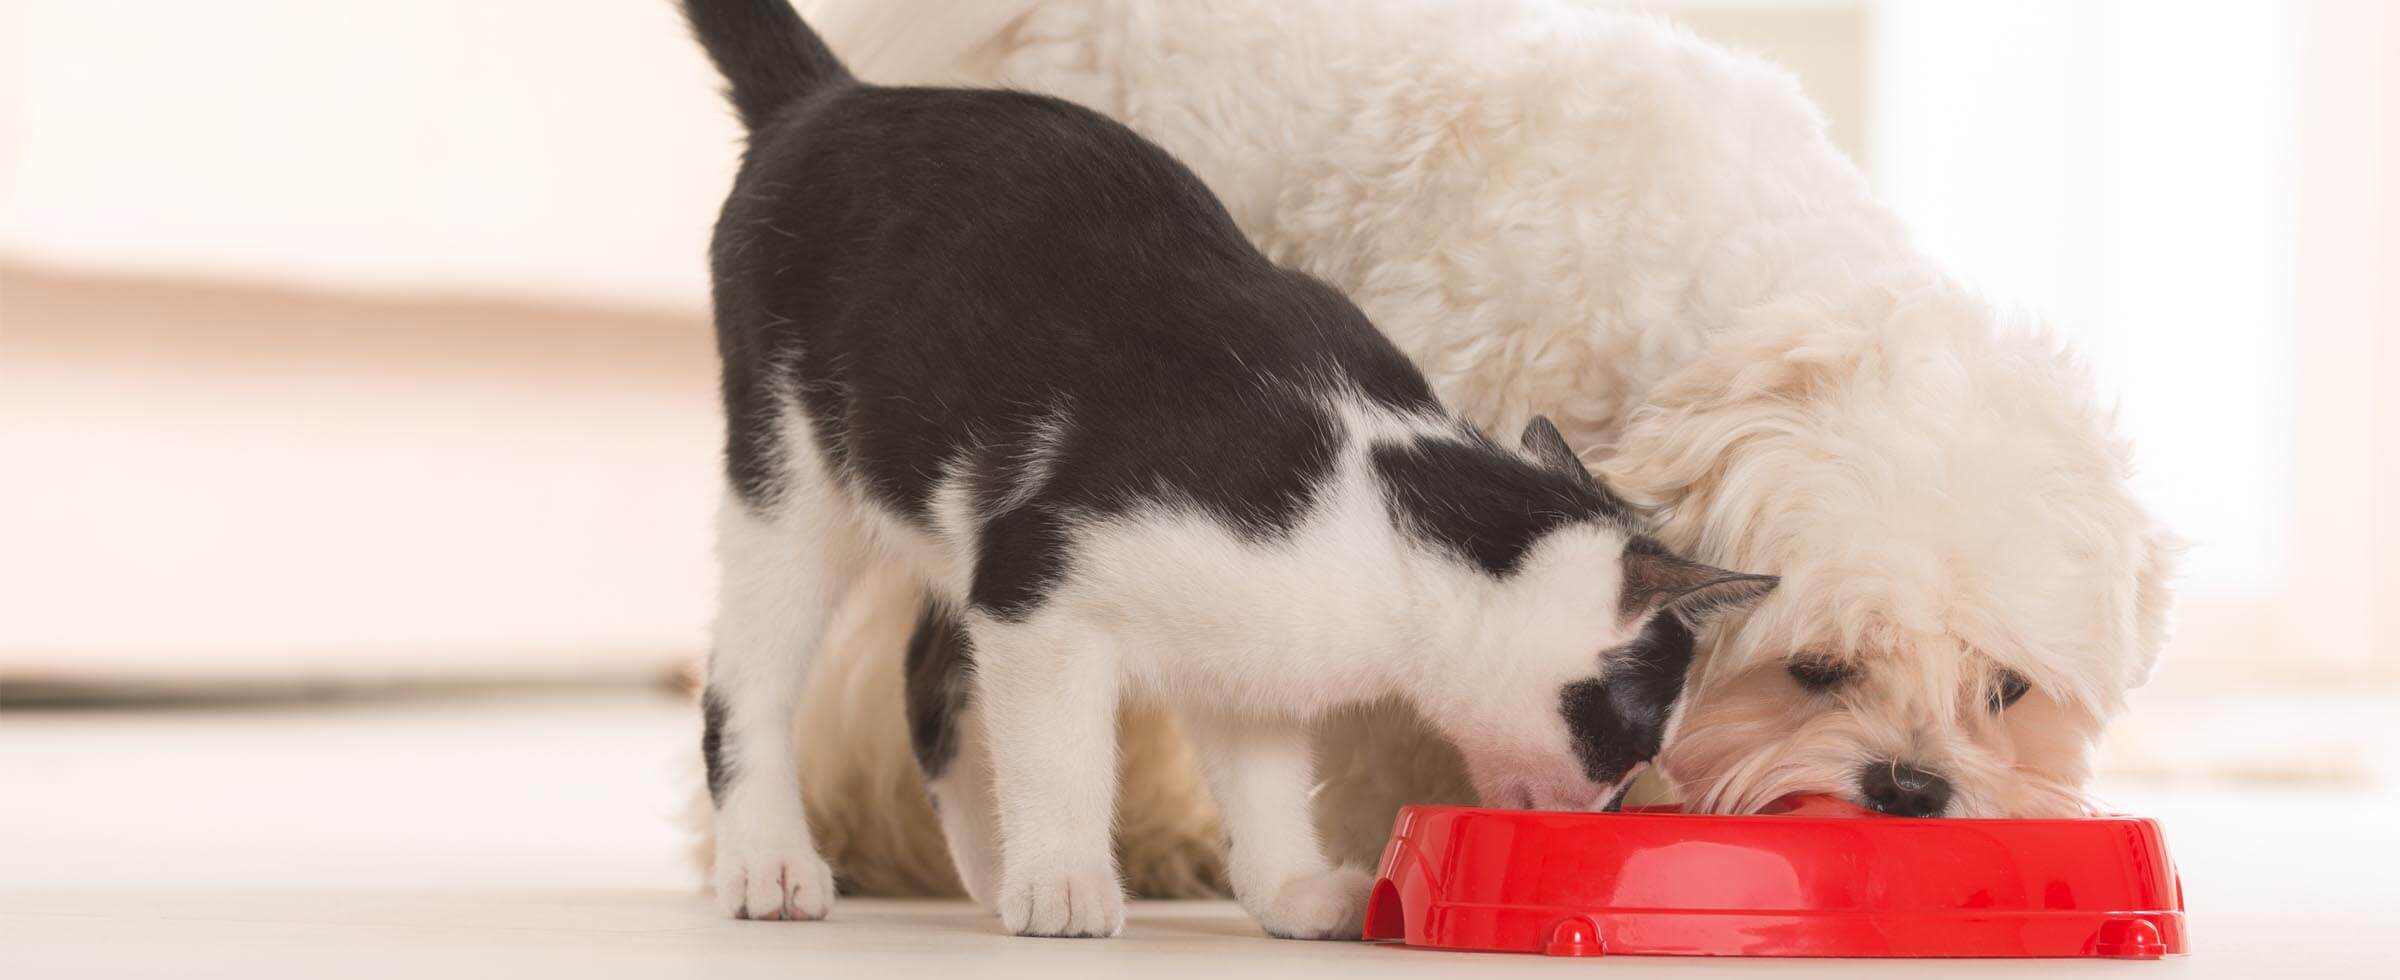 dog and cat sharing bowl